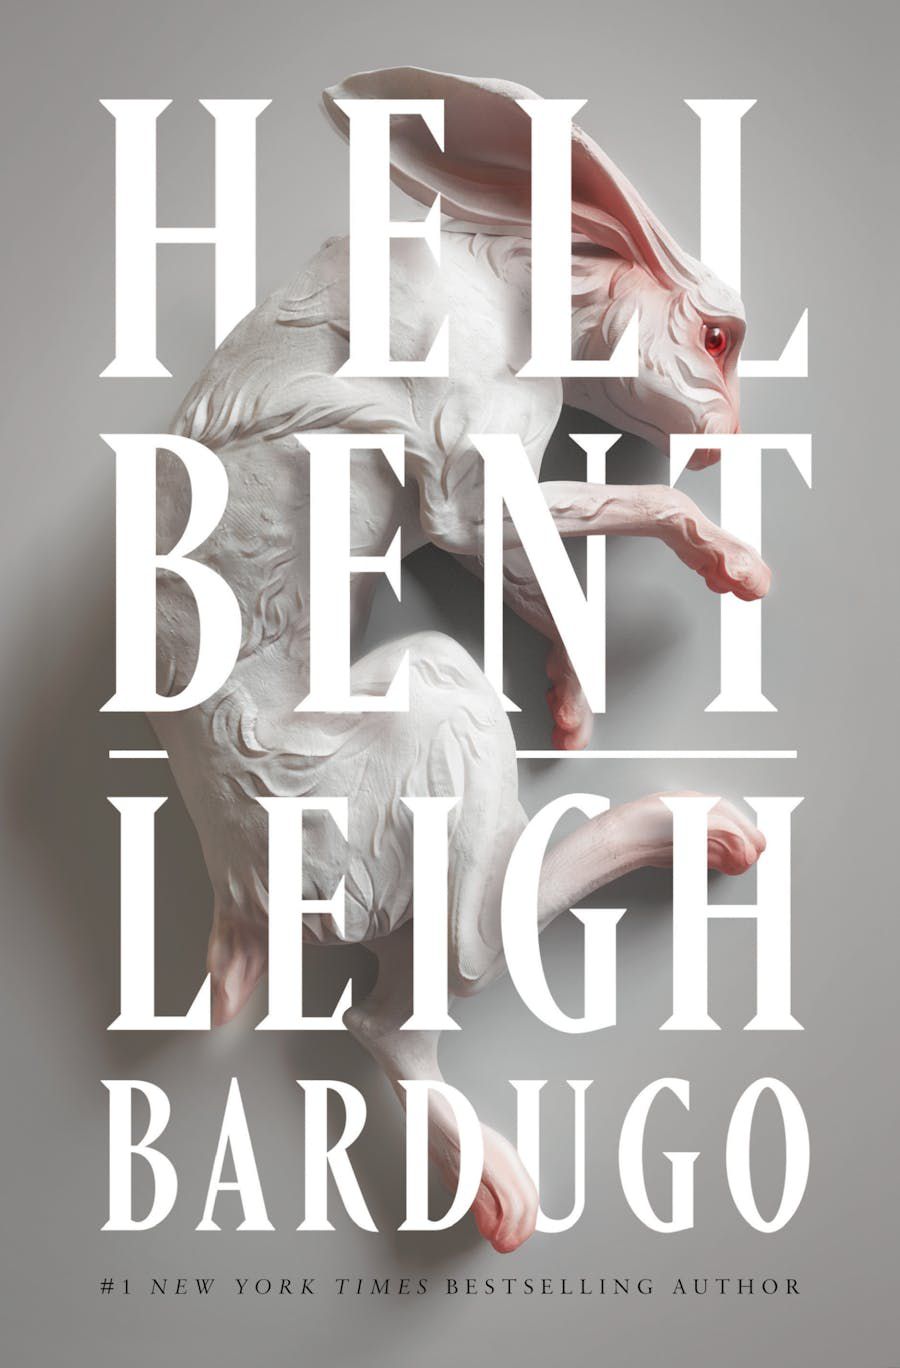 Immagine di copertina per Hell Bent di Leigh Bardugo, che presenta un coniglio tra le parole del titolo e il nome dell'autore